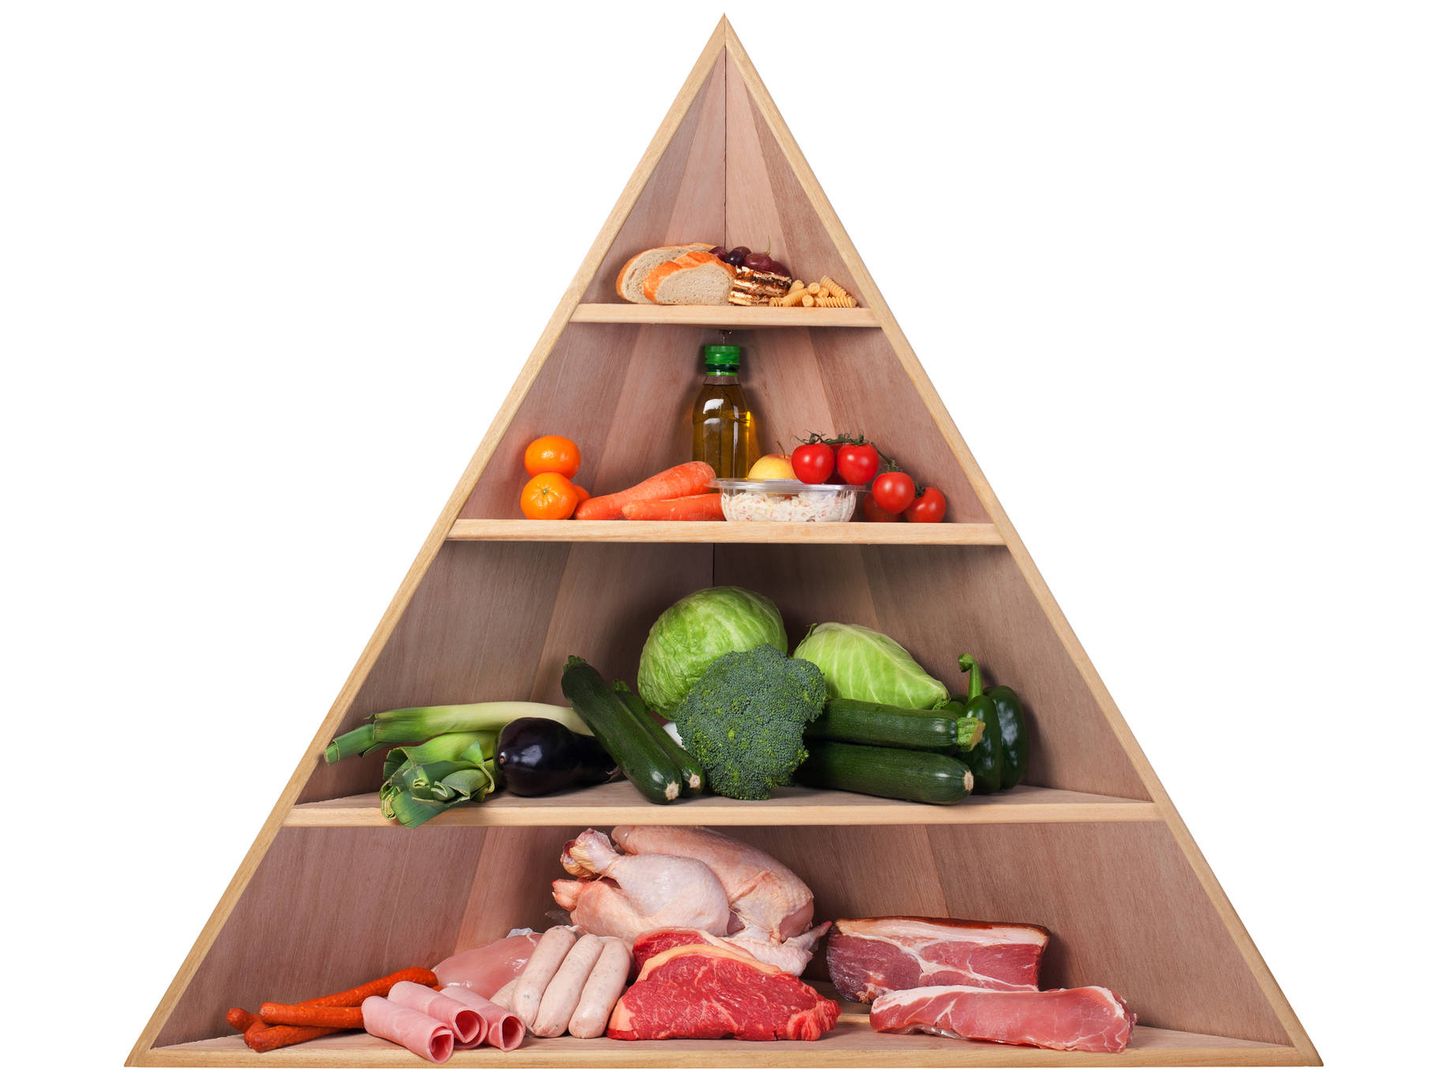 La pirámide alimenticia ya no está bien considerada (iStock)